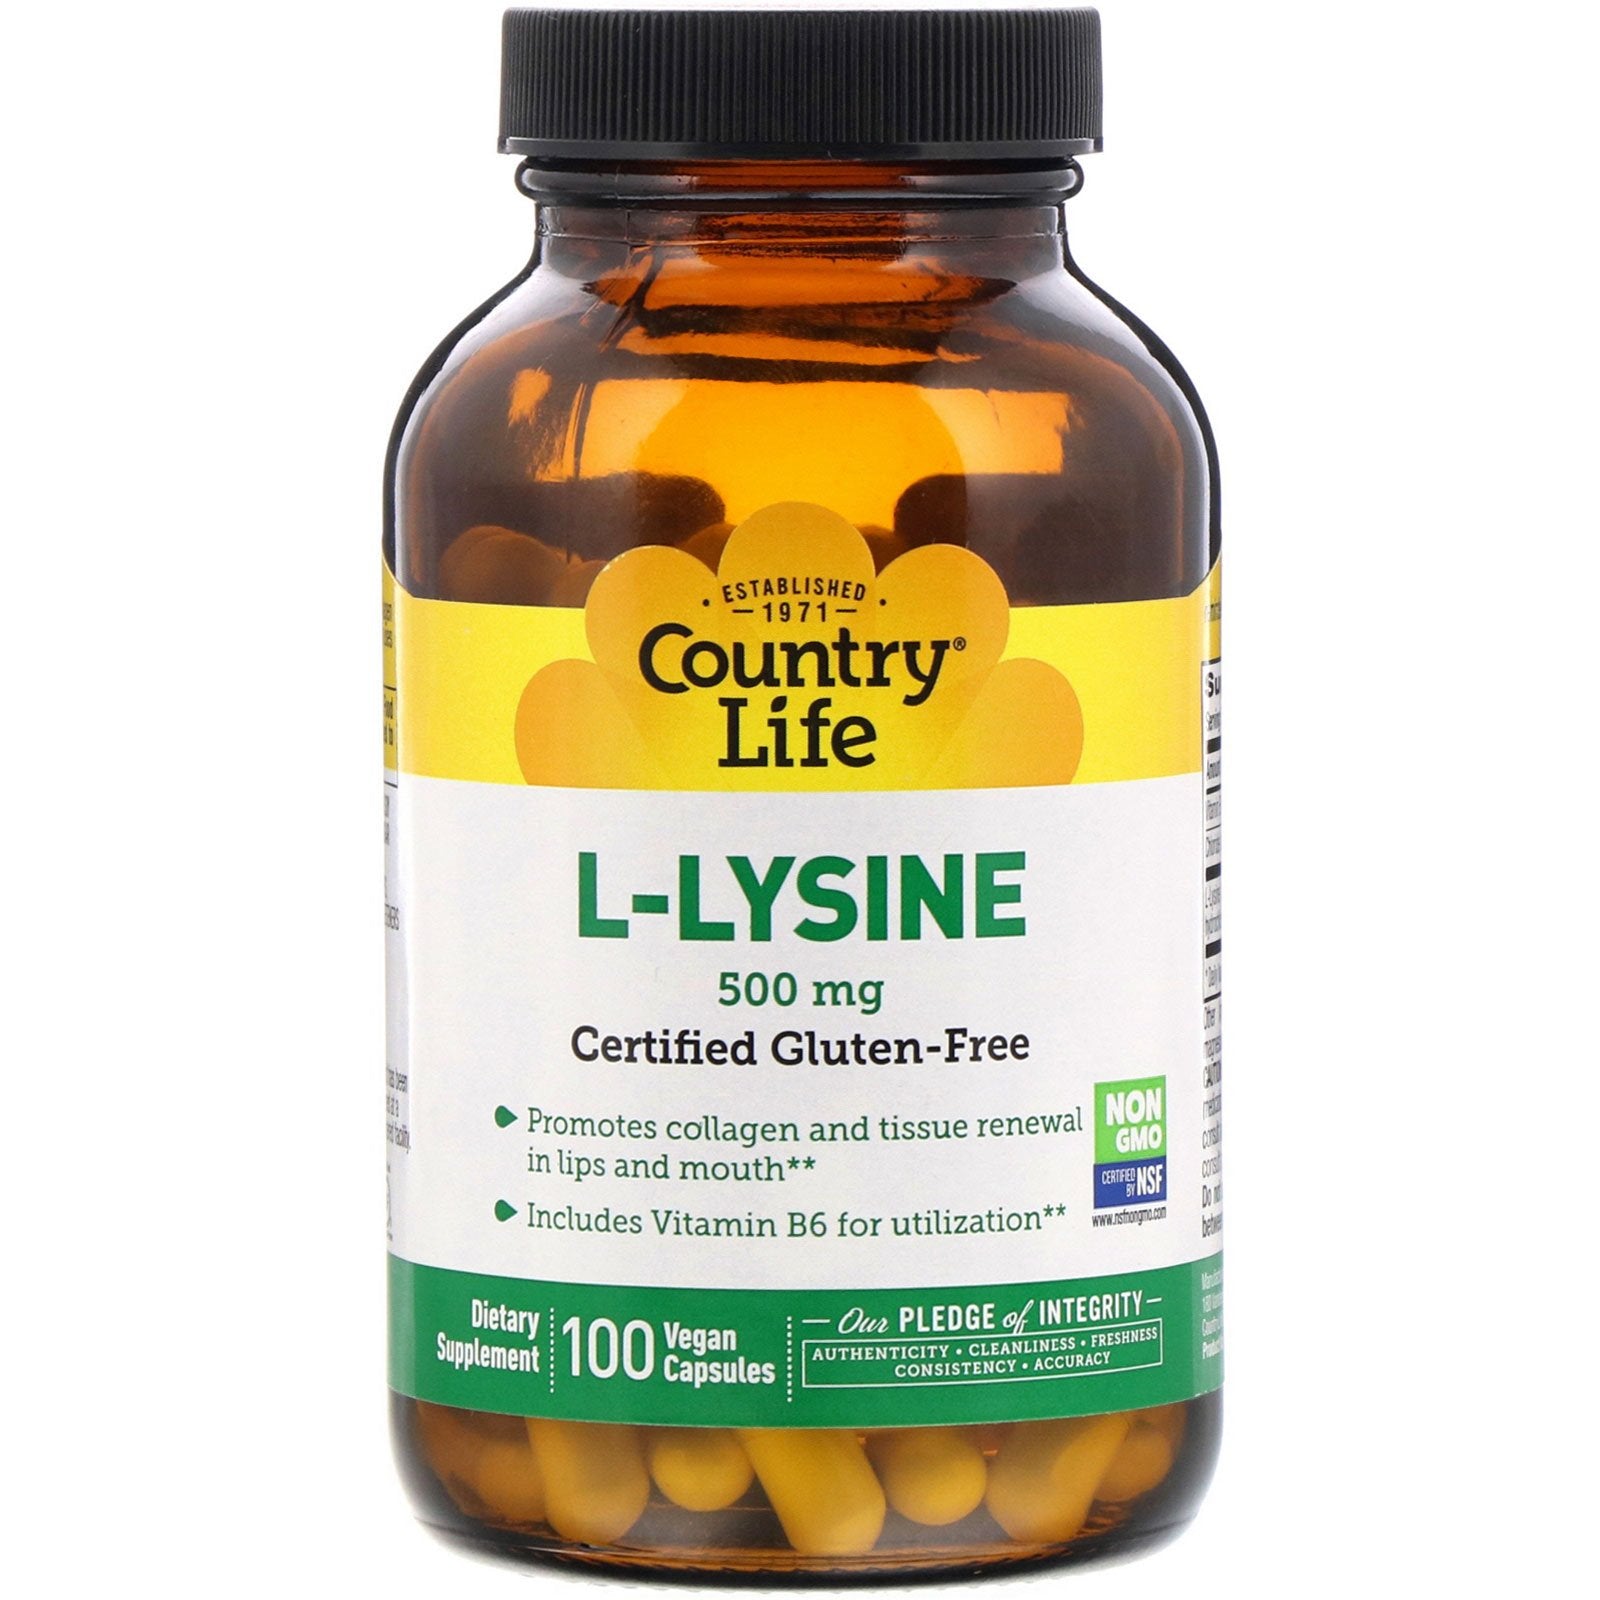 Country Life L-Lysine, 500 Mg, 100 Vegan Capsules